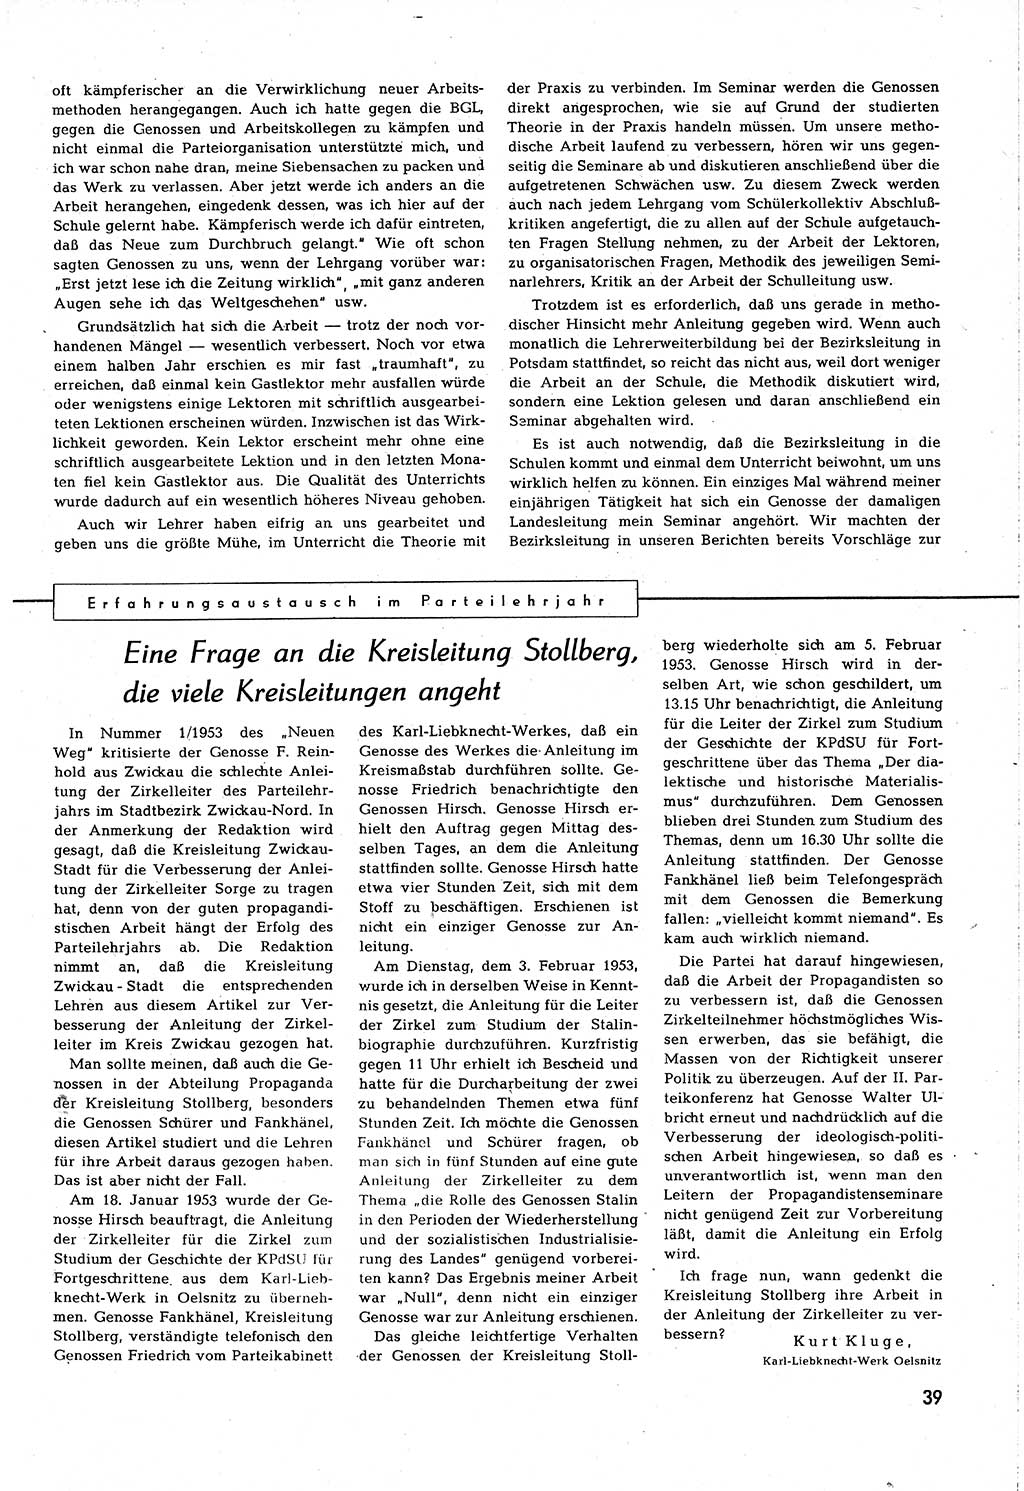 Neuer Weg (NW), Organ des Zentralkomitees (ZK) [Sozialistische Einheitspartei Deutschlands (SED)] für alle Parteiarbeiter, 8. Jahrgang [Deutsche Demokratische Republik (DDR)] 1953, Heft 7/39 (NW ZK SED DDR 1953, H. 7/39)